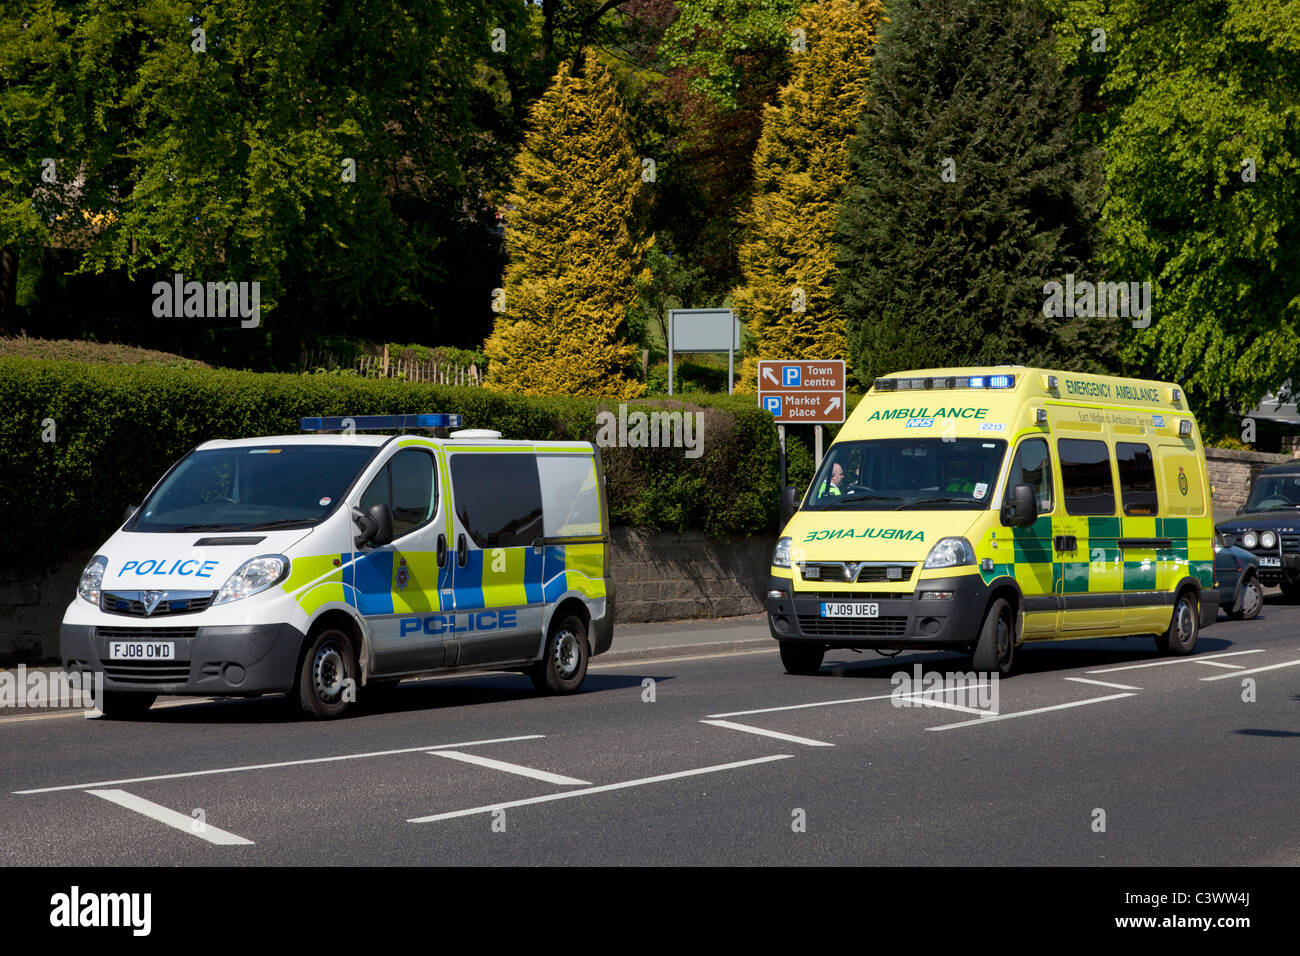 emergency vehicles emergency Ambulance uk and police uk at an emergency incident england uk gb europe Stock Photo